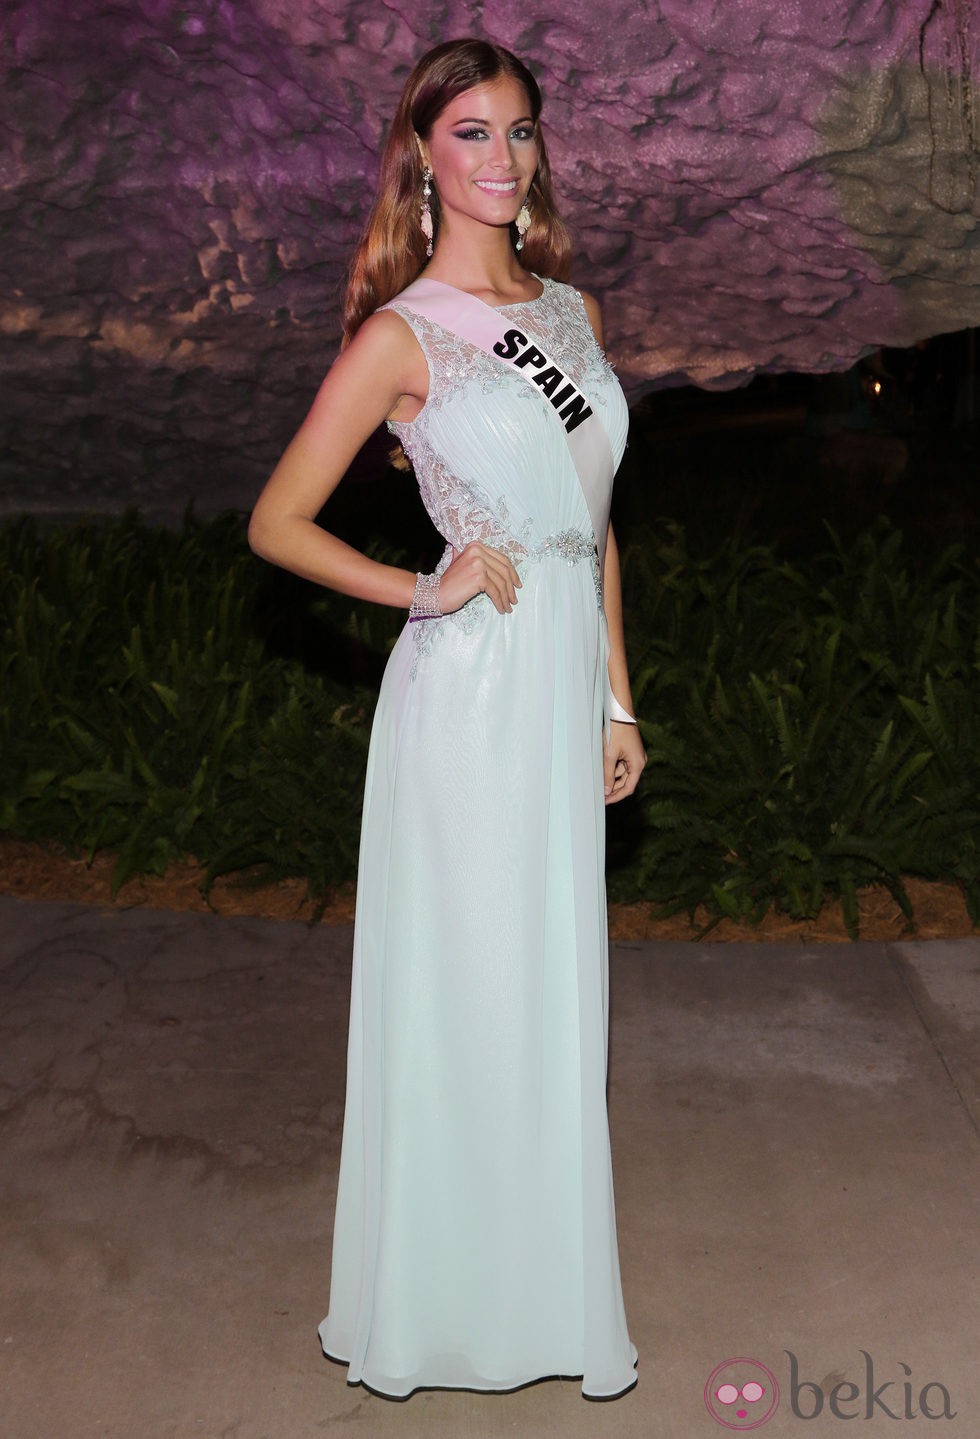 Desiré Cordero acude al evento de bienvenida y recepción de Miss Universo 2015